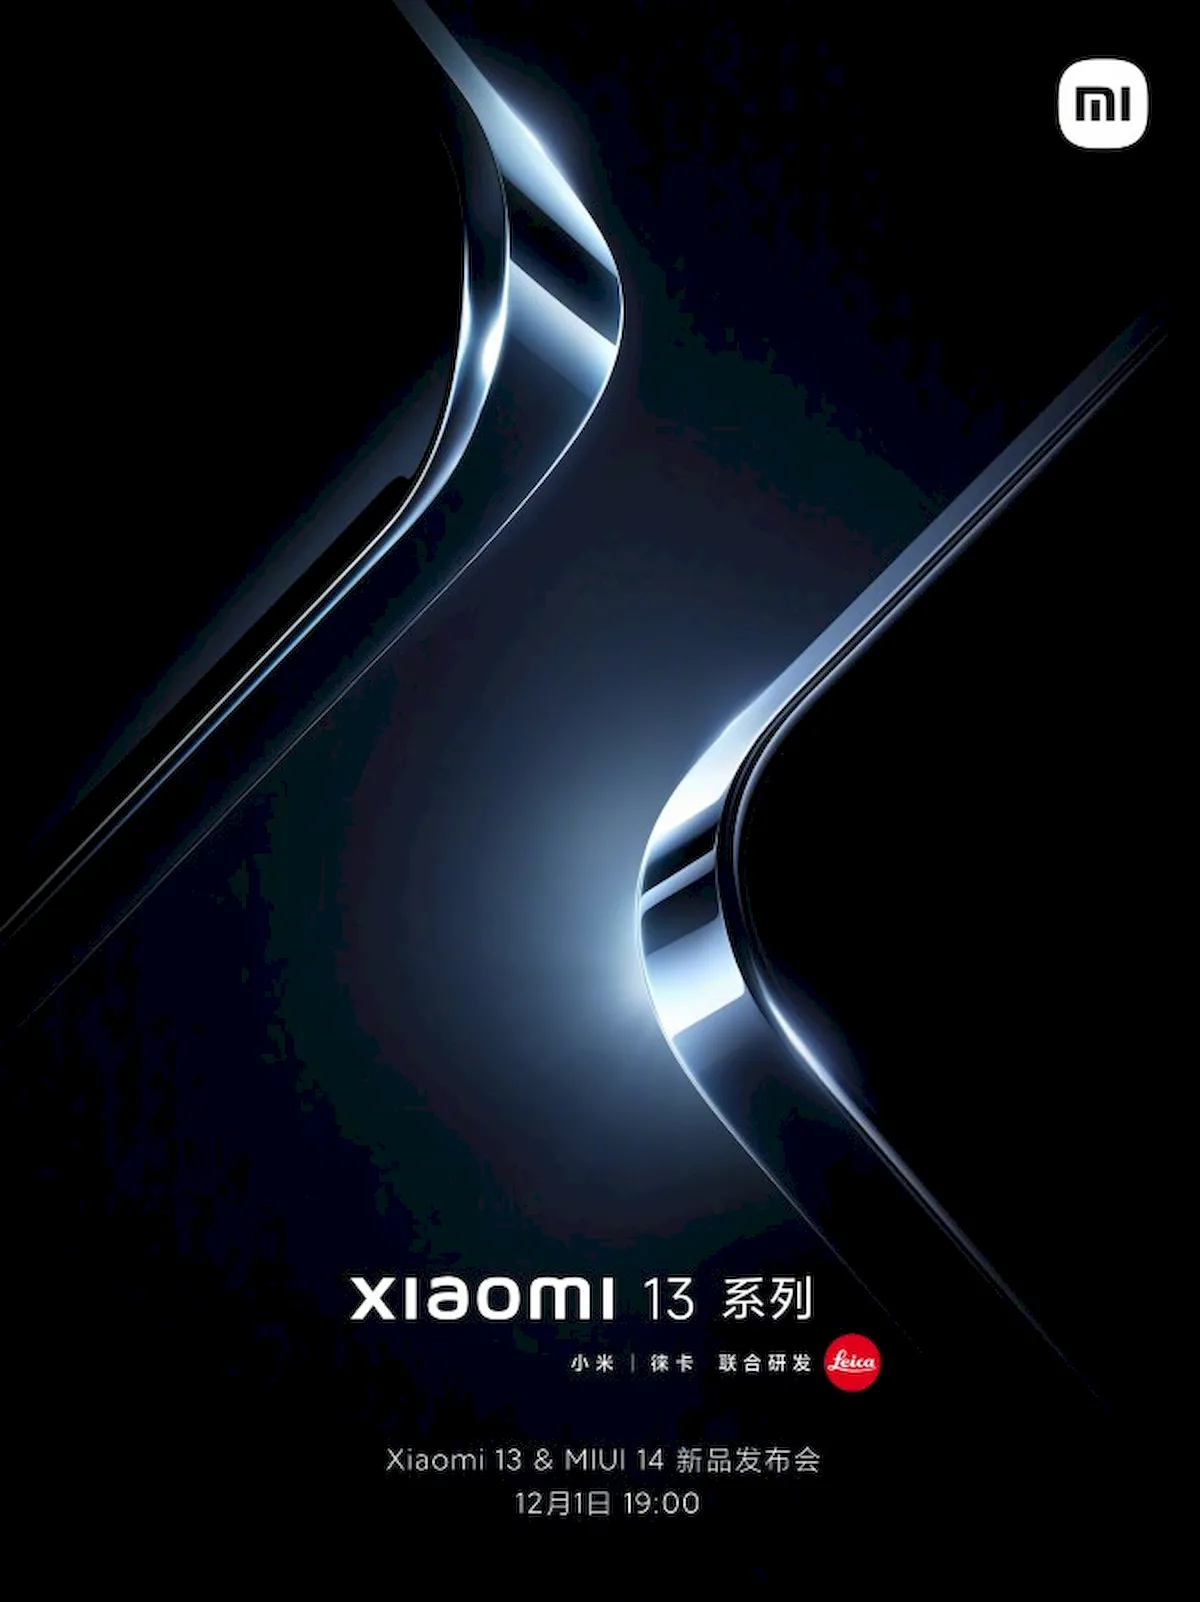 Série Xiaomi 13 e MIUI 14 serão lançadas na mesma data